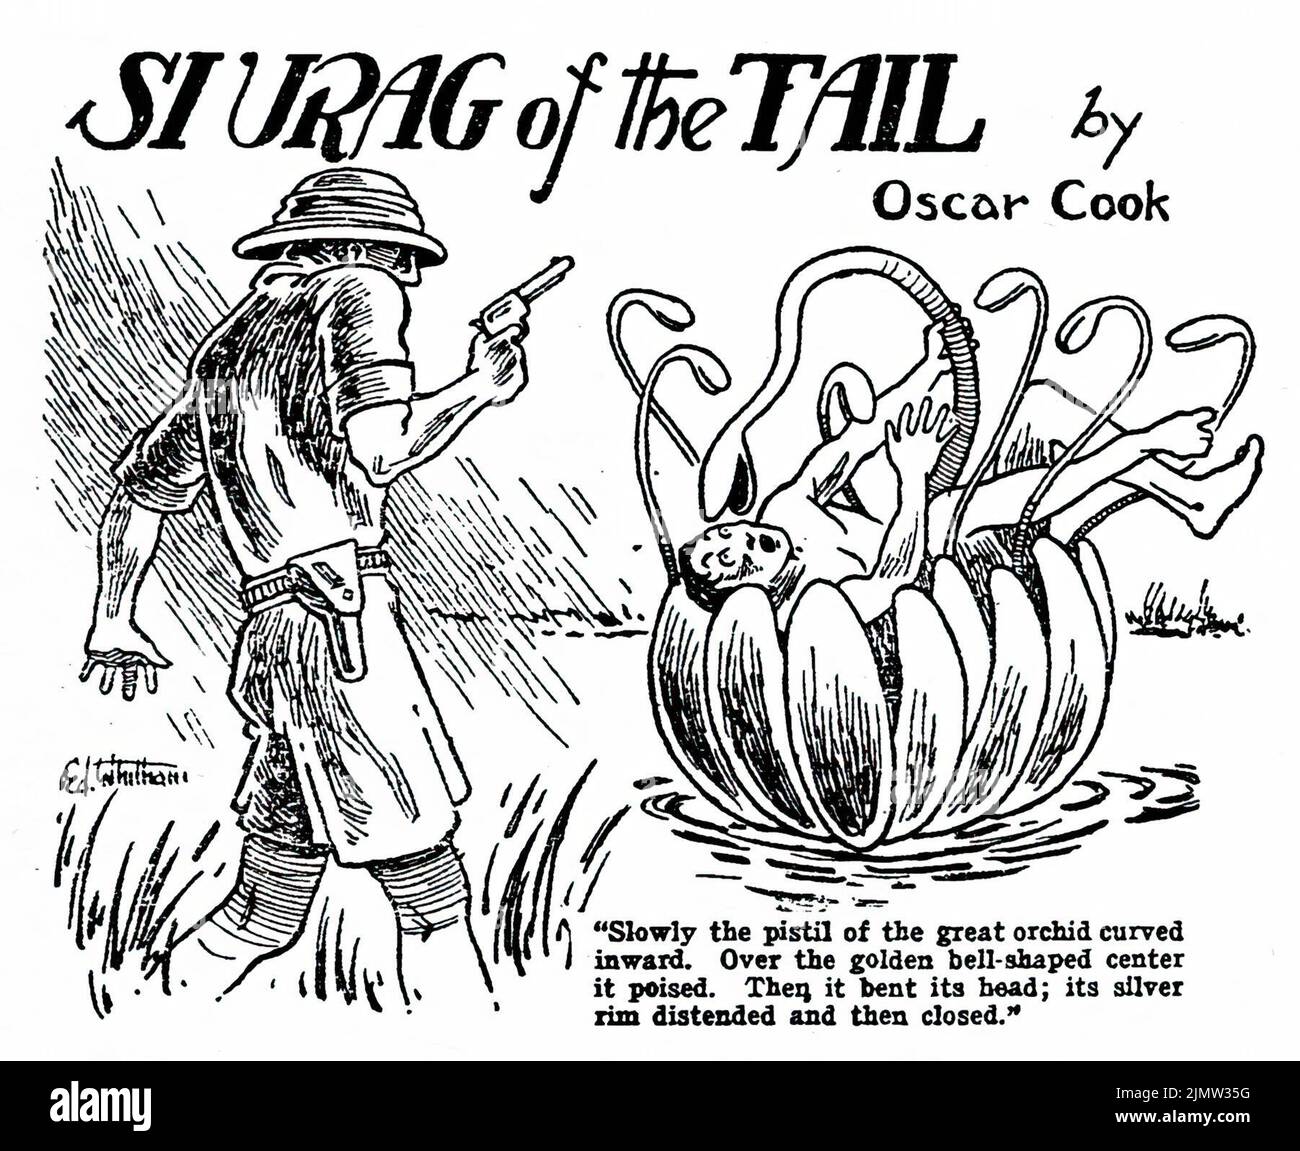 SI UAG of the Tail (1923) von Oscar Cook. Illustration von Ed Whitham aus Weird Tales, Juli 1926 Stockfoto